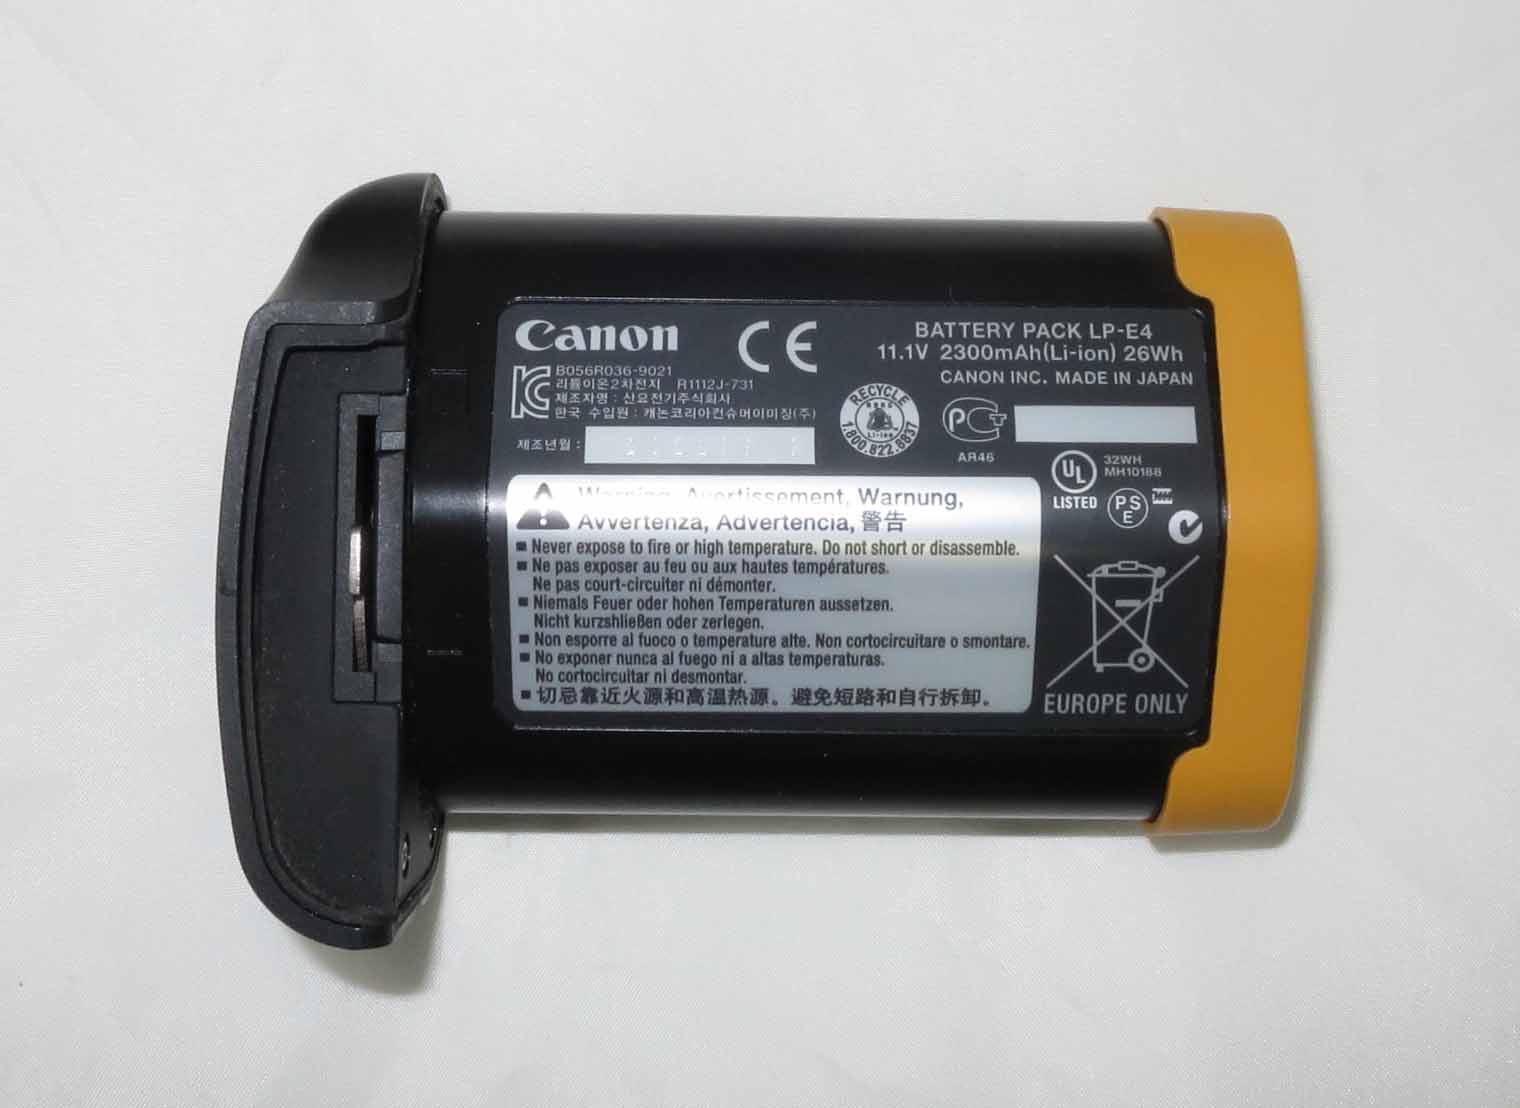  Canon LP-E4 .  EOS 1D/1Ds Mark III /